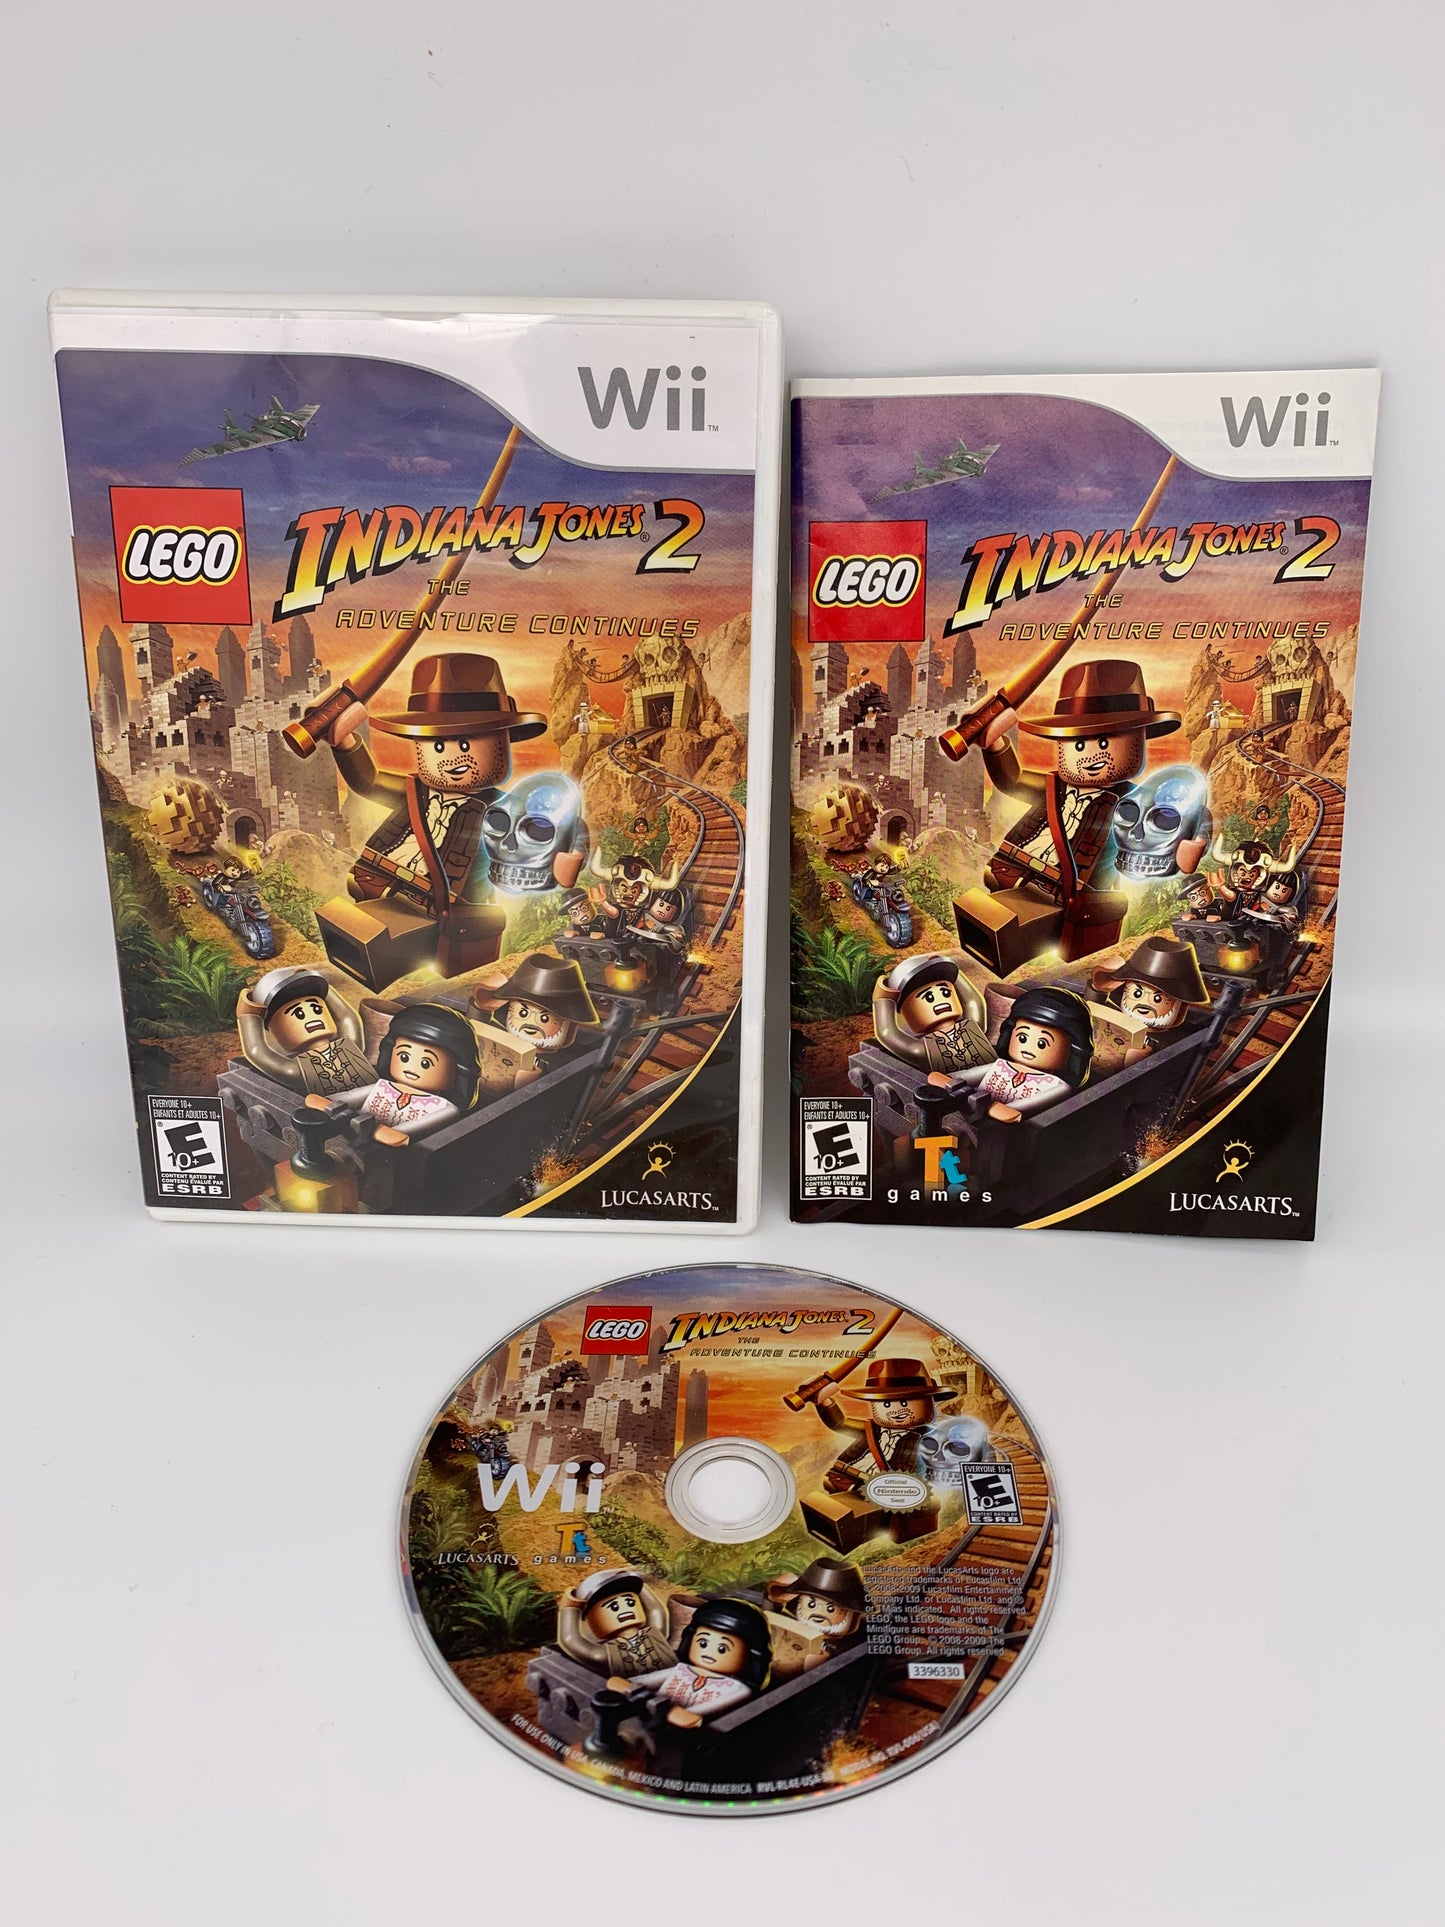 PiXEL-RETRO.COM : NINTENDO WII COMPLET CIB BOX MANUAL GAME NTSC LEGO INDIANA JONES 2 THE ADVENTURE CONTINUES